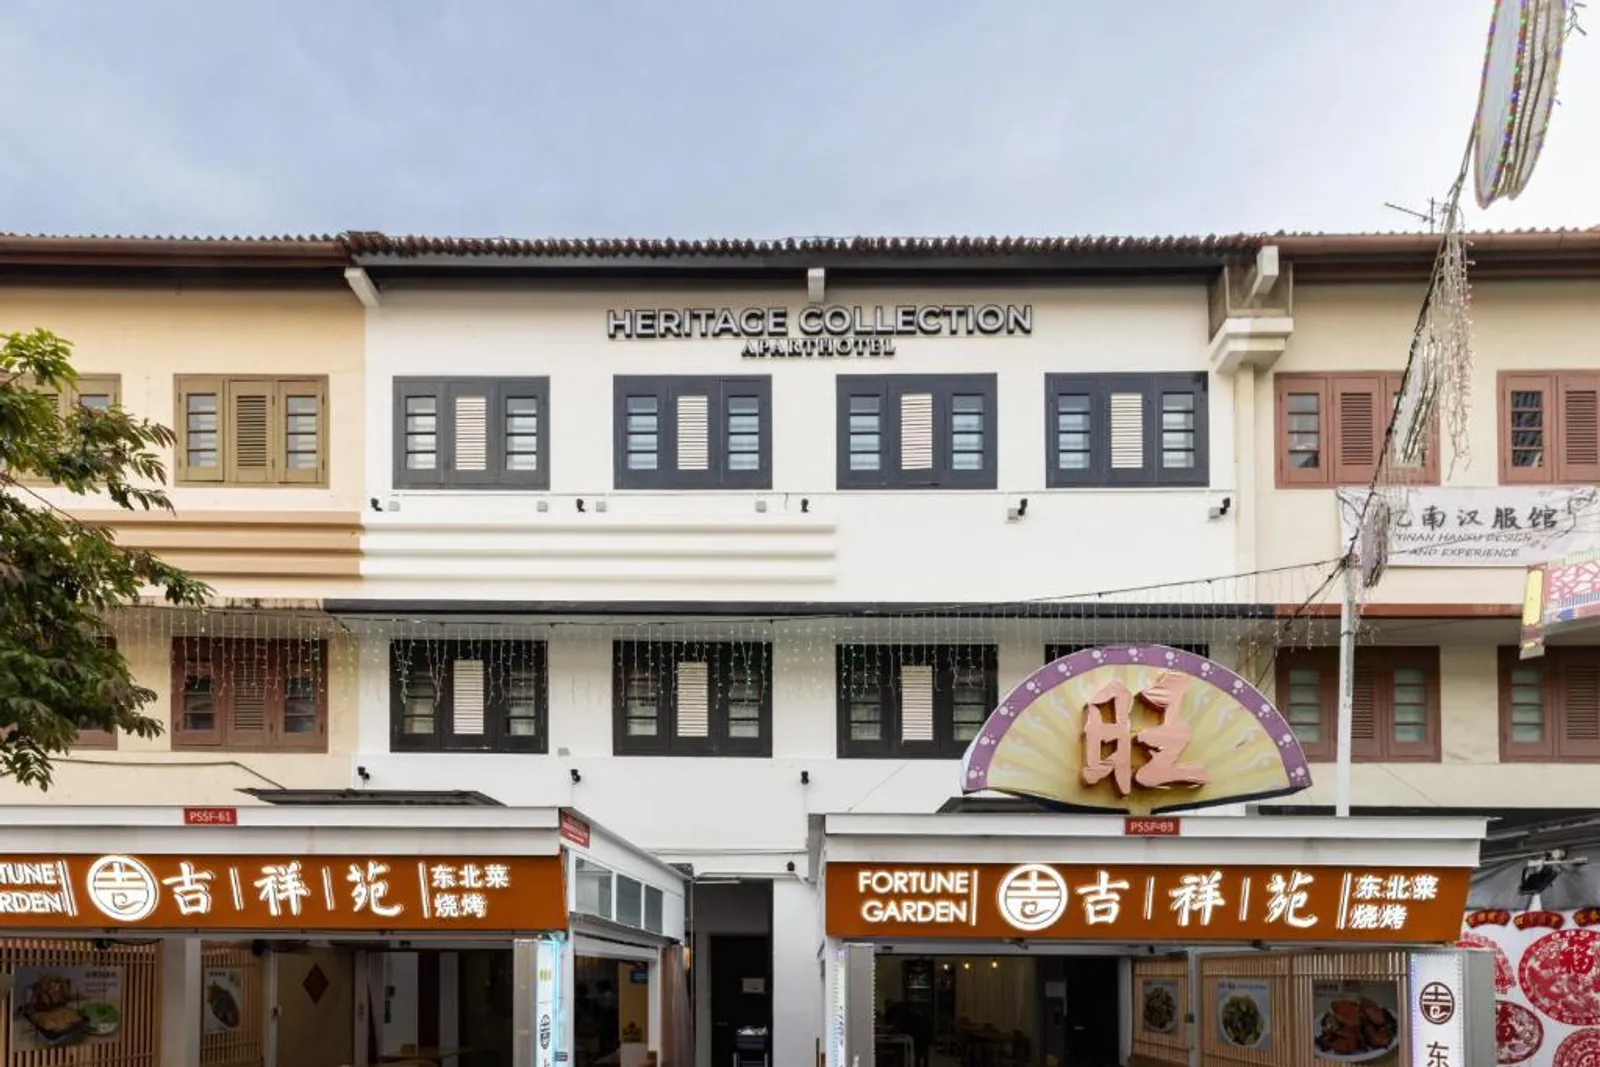 Rekomendasi Hotel dan Hiburan di Chinatown Singapura, Autentik Banget!